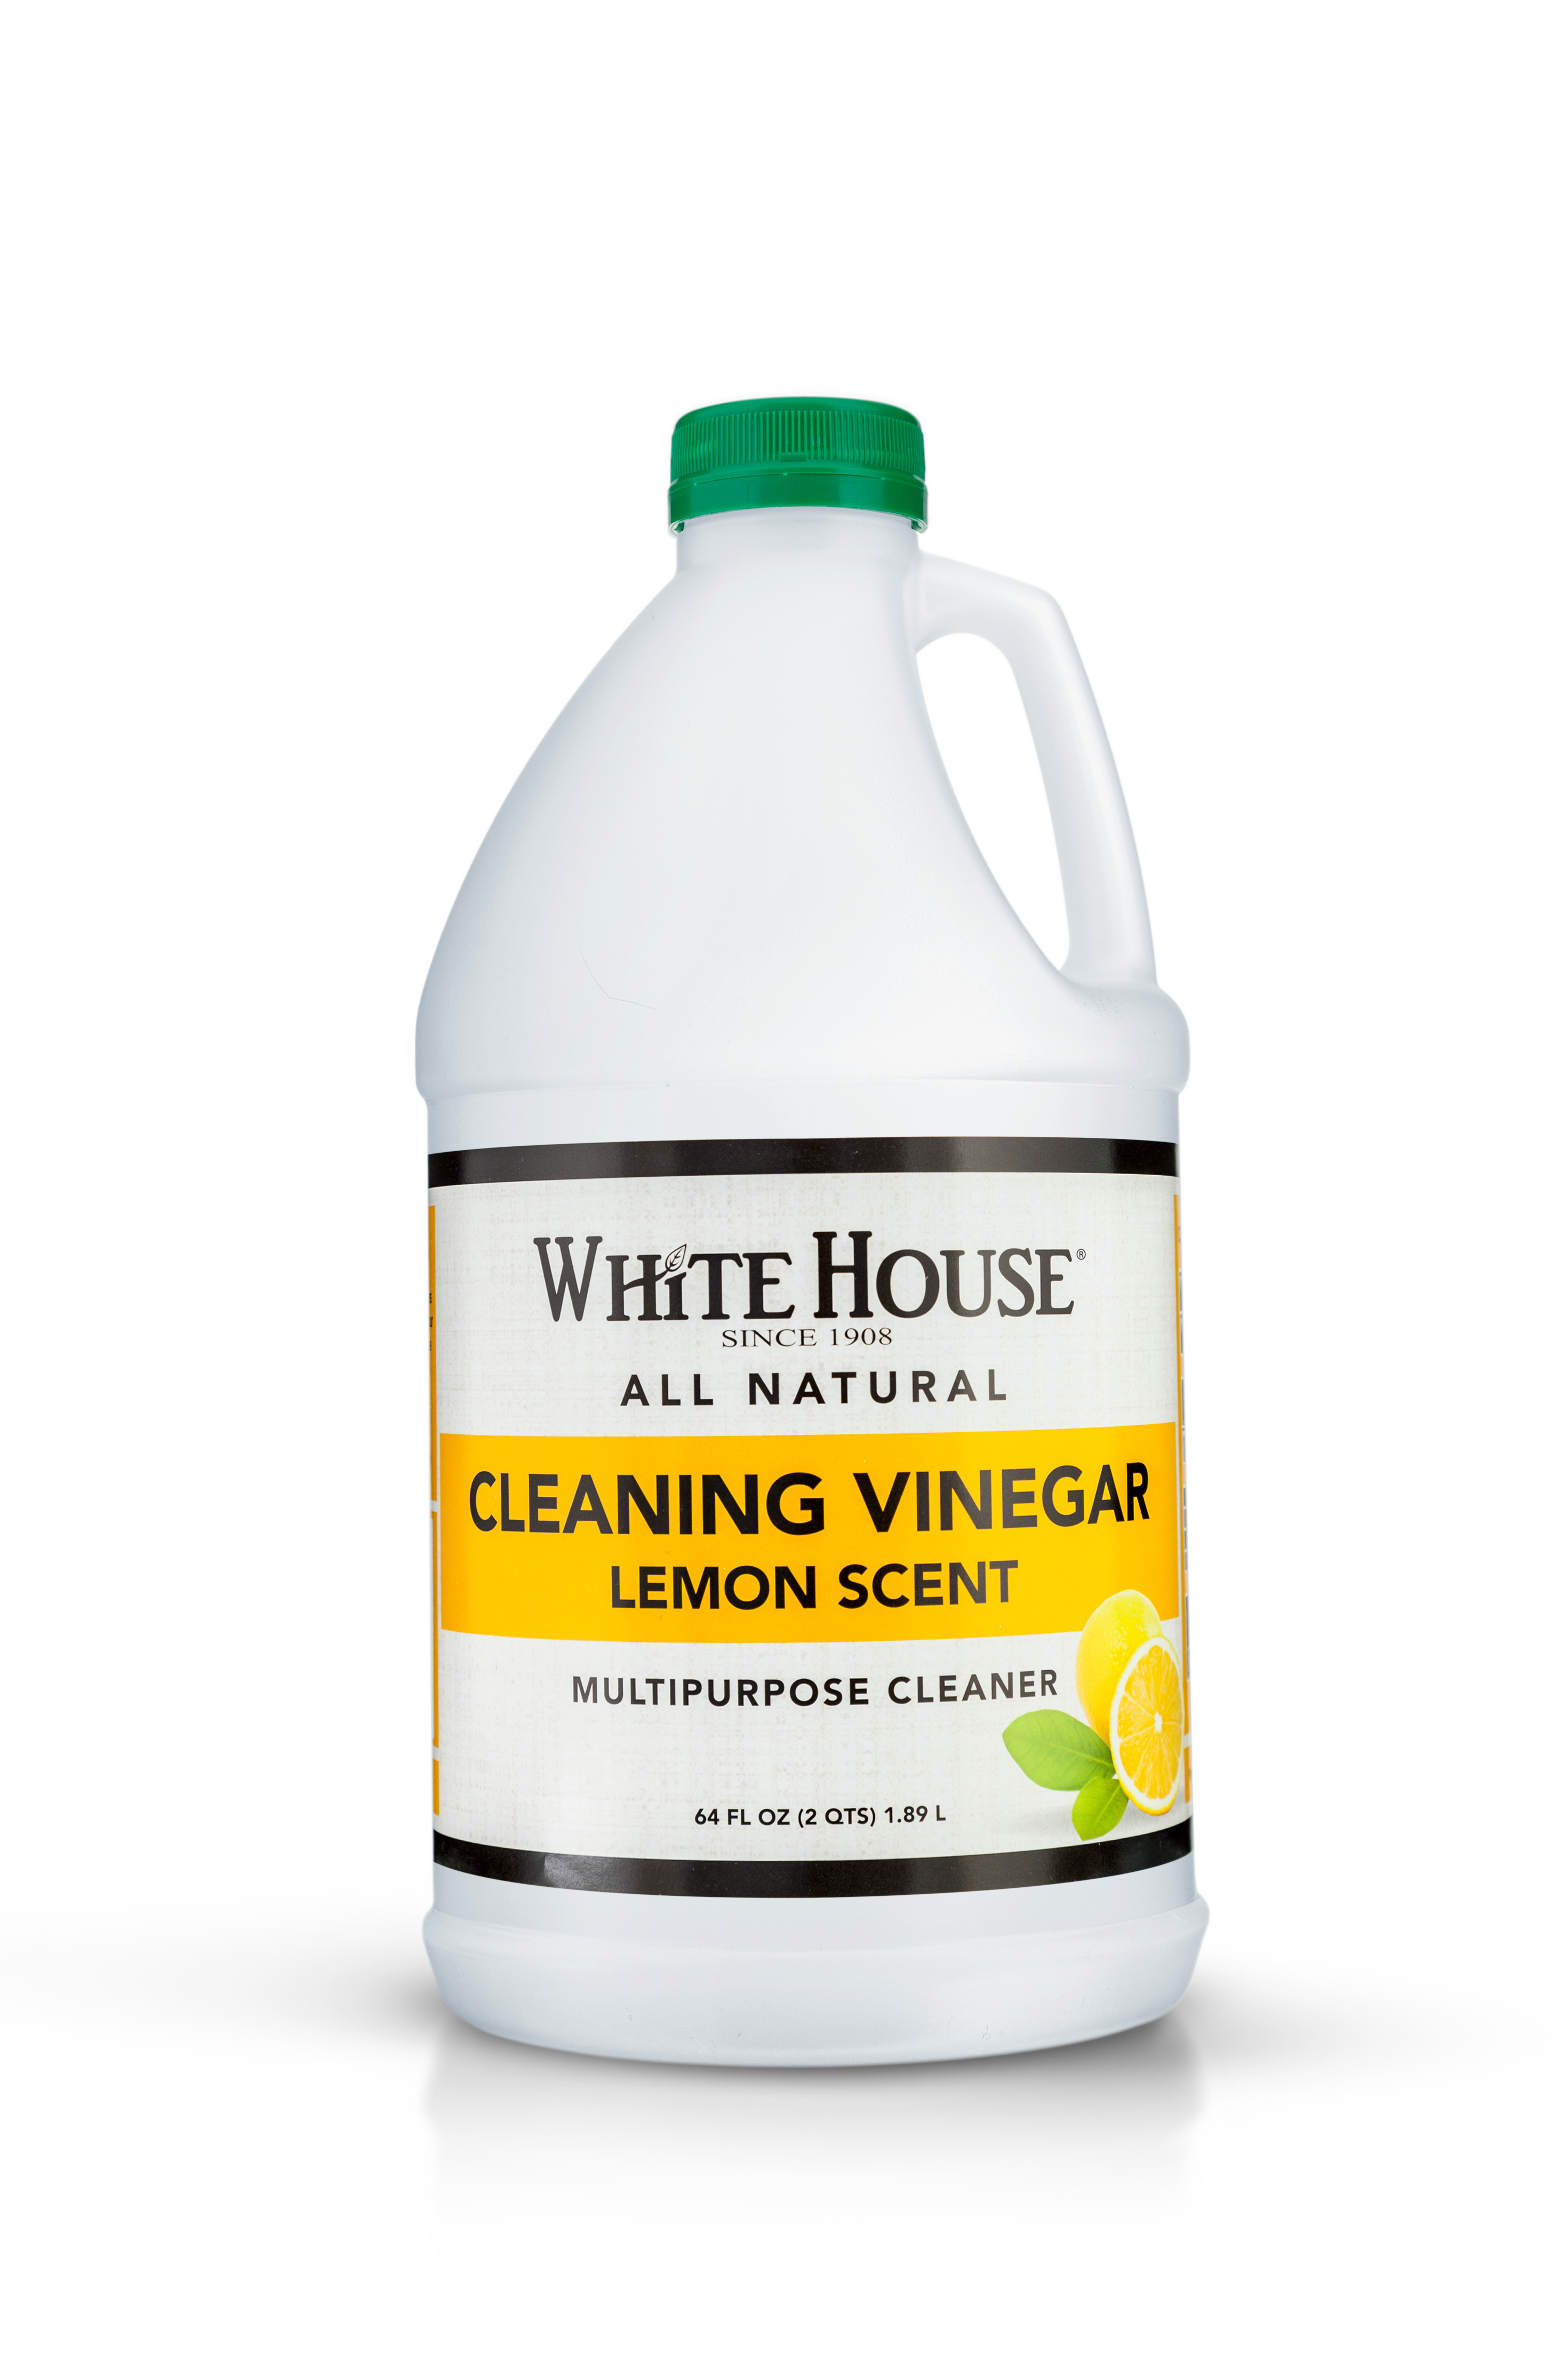 White House Cleaning Vinegar, Lemon Scent, 64 oz 